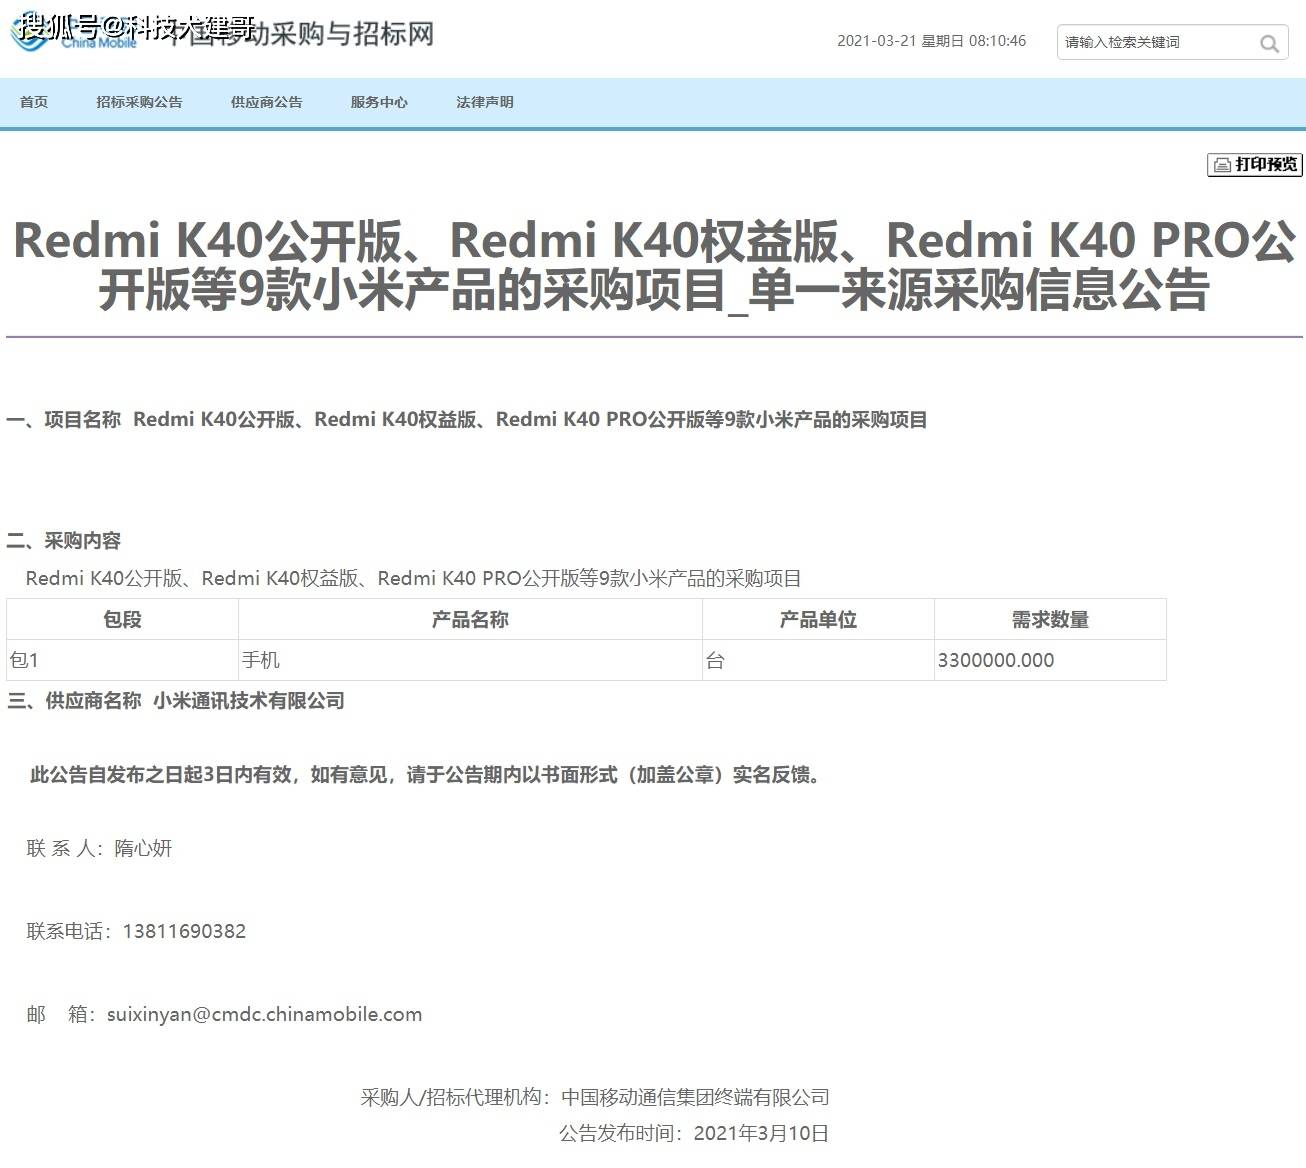 红米K40 Pro刚才卖了三百万台 东京奥运确定闭门举办